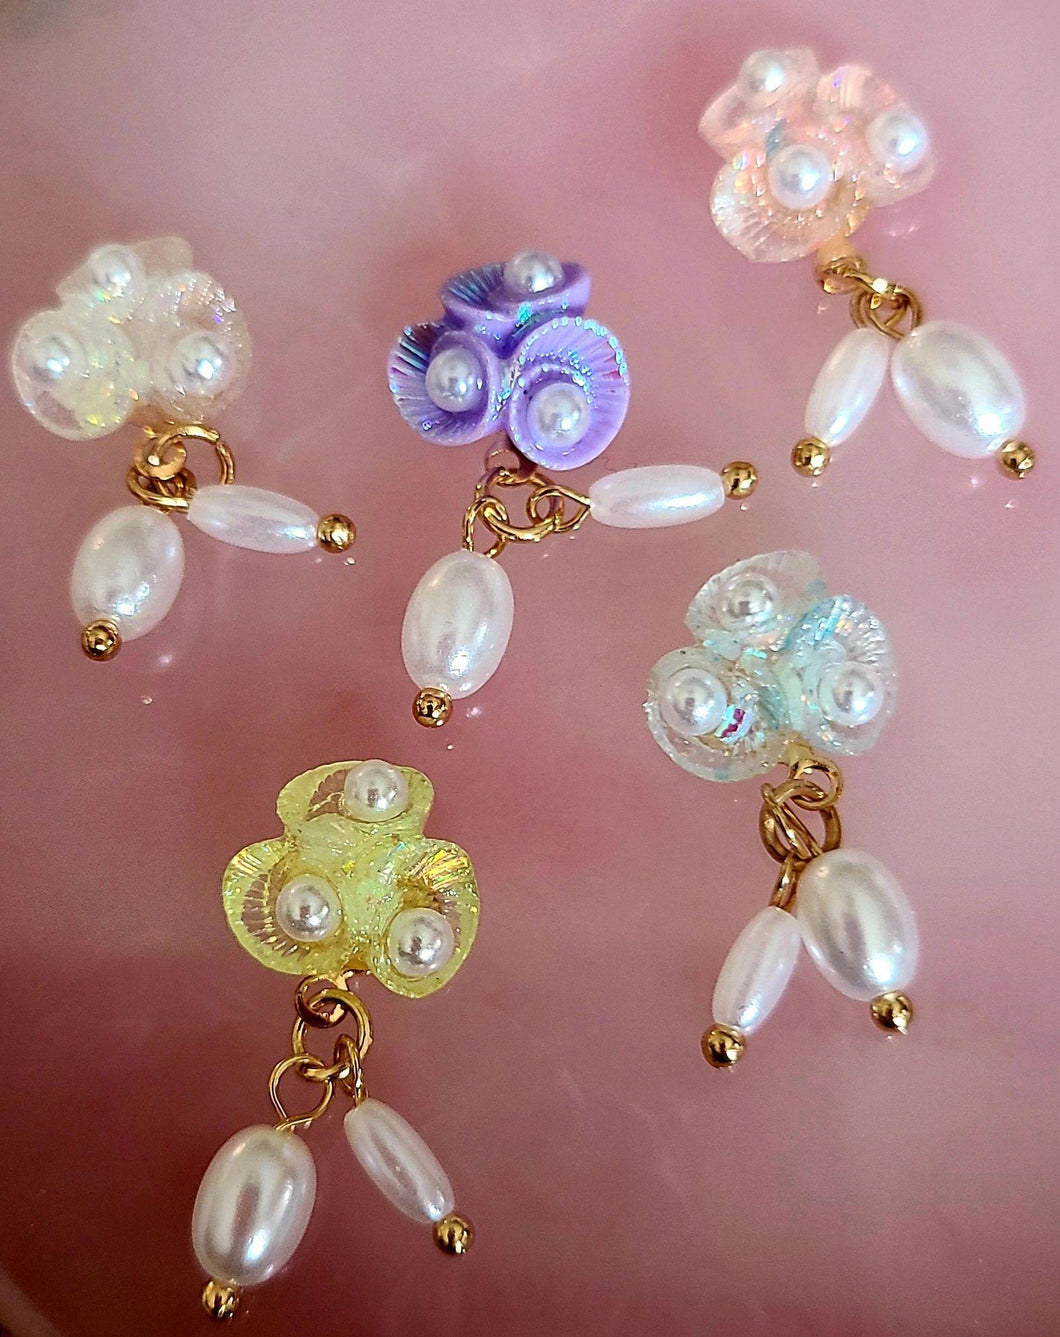 Luminous Nail Charms with Pearls - Maritza's Nails 